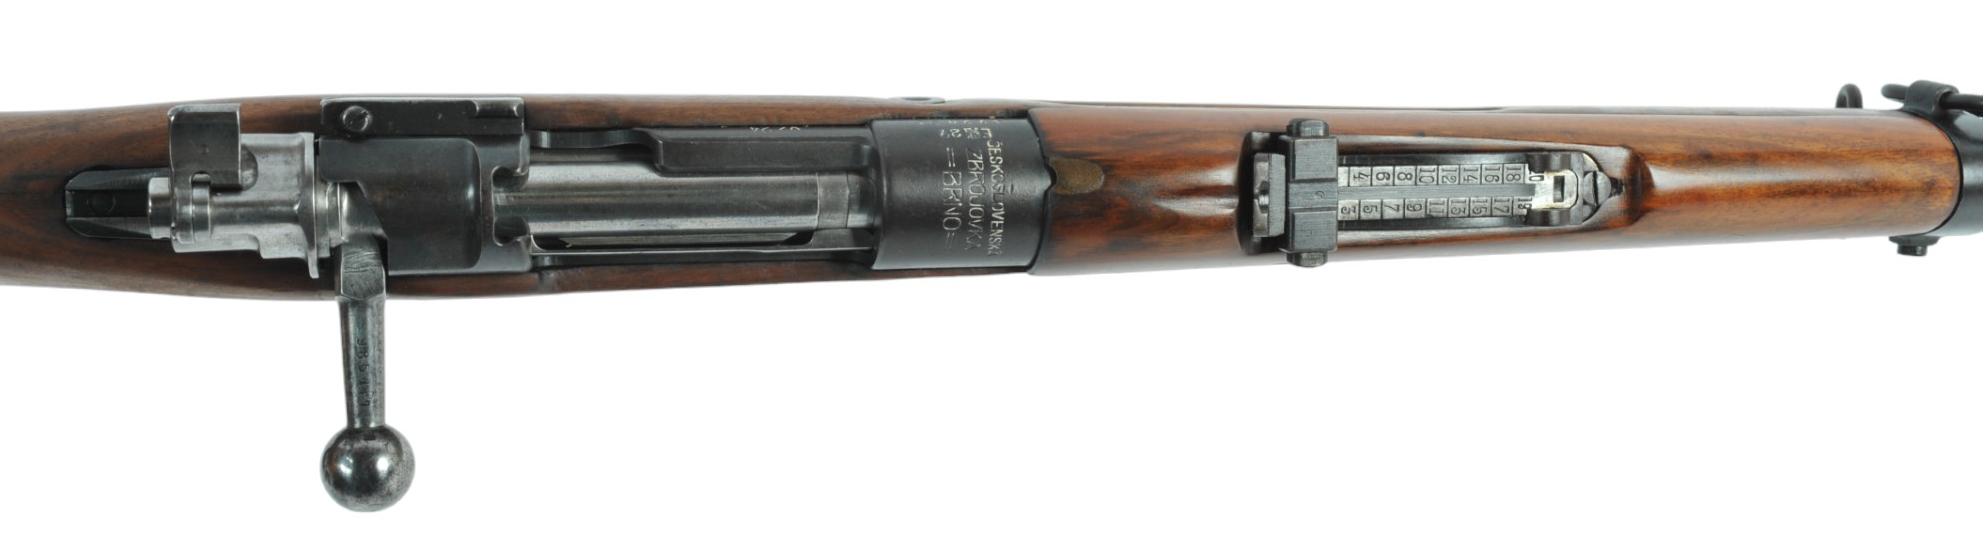 Czech/BRNO VZ-24 7.92x57MM Bolt-action Rifle FFL Required: 4790 (VDM1)